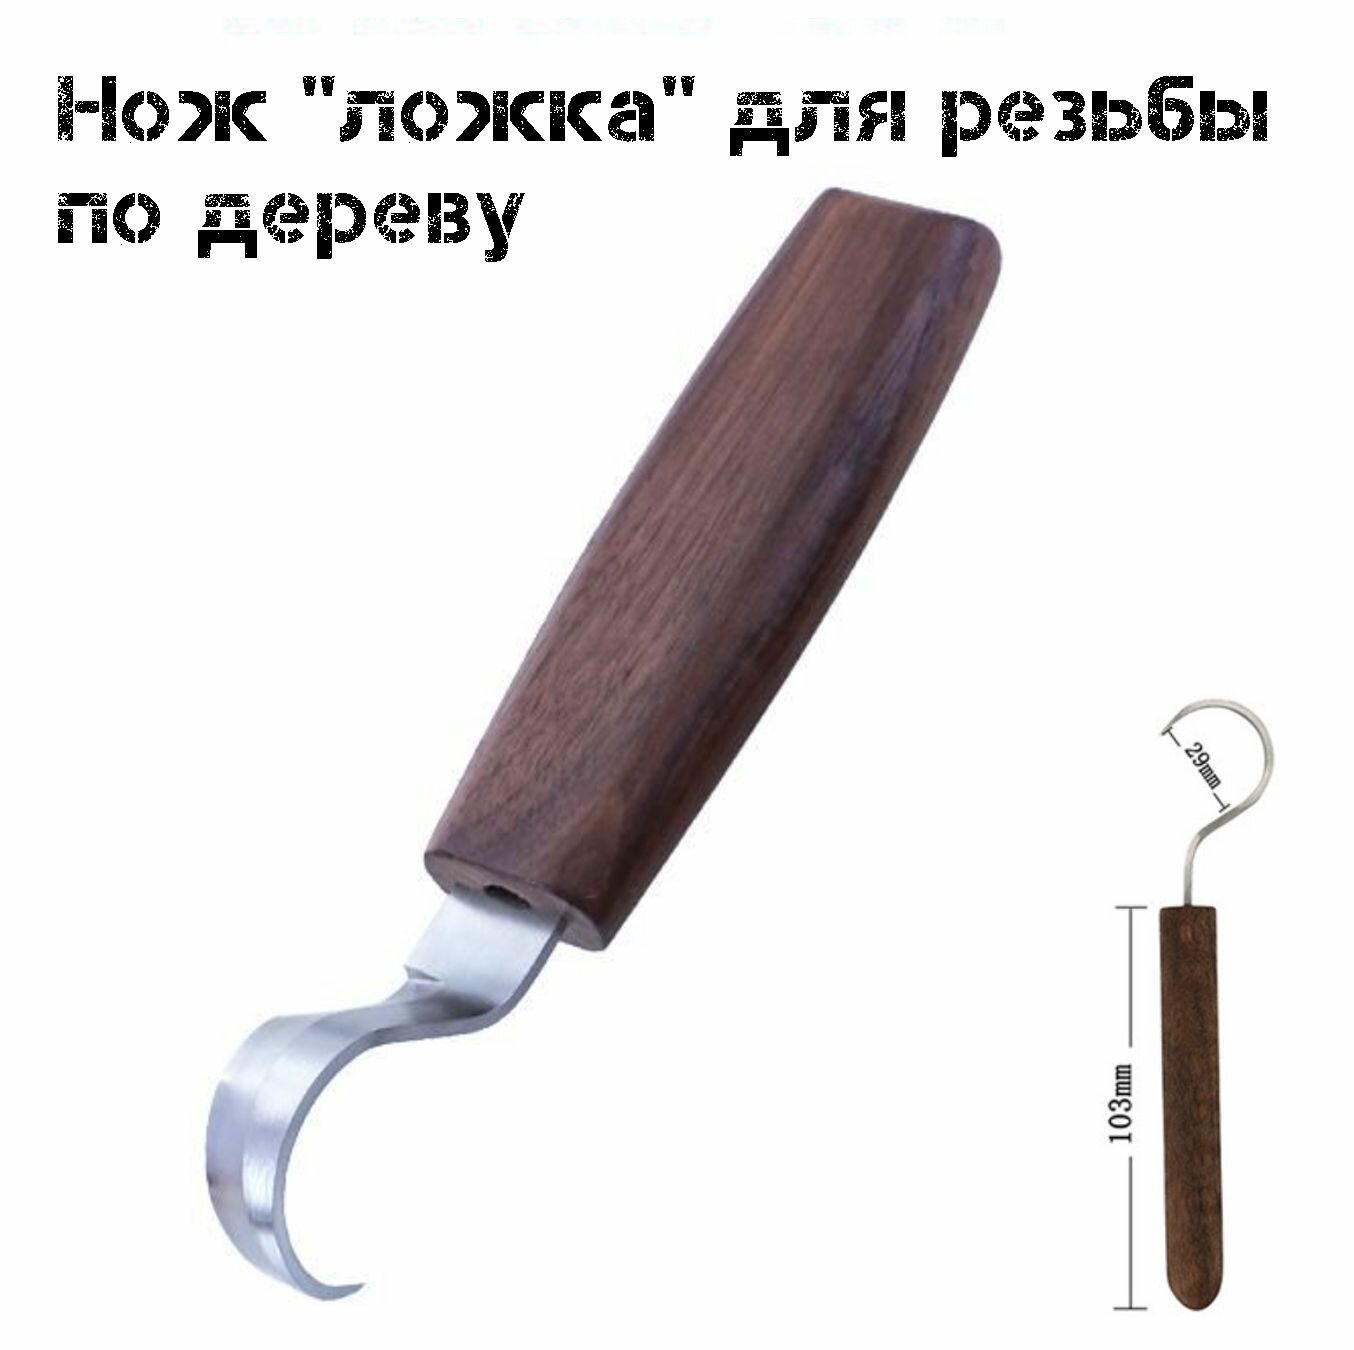 Нож для резьбы по дереву, инструменты для рукоделия, резак по древесине, стамеска